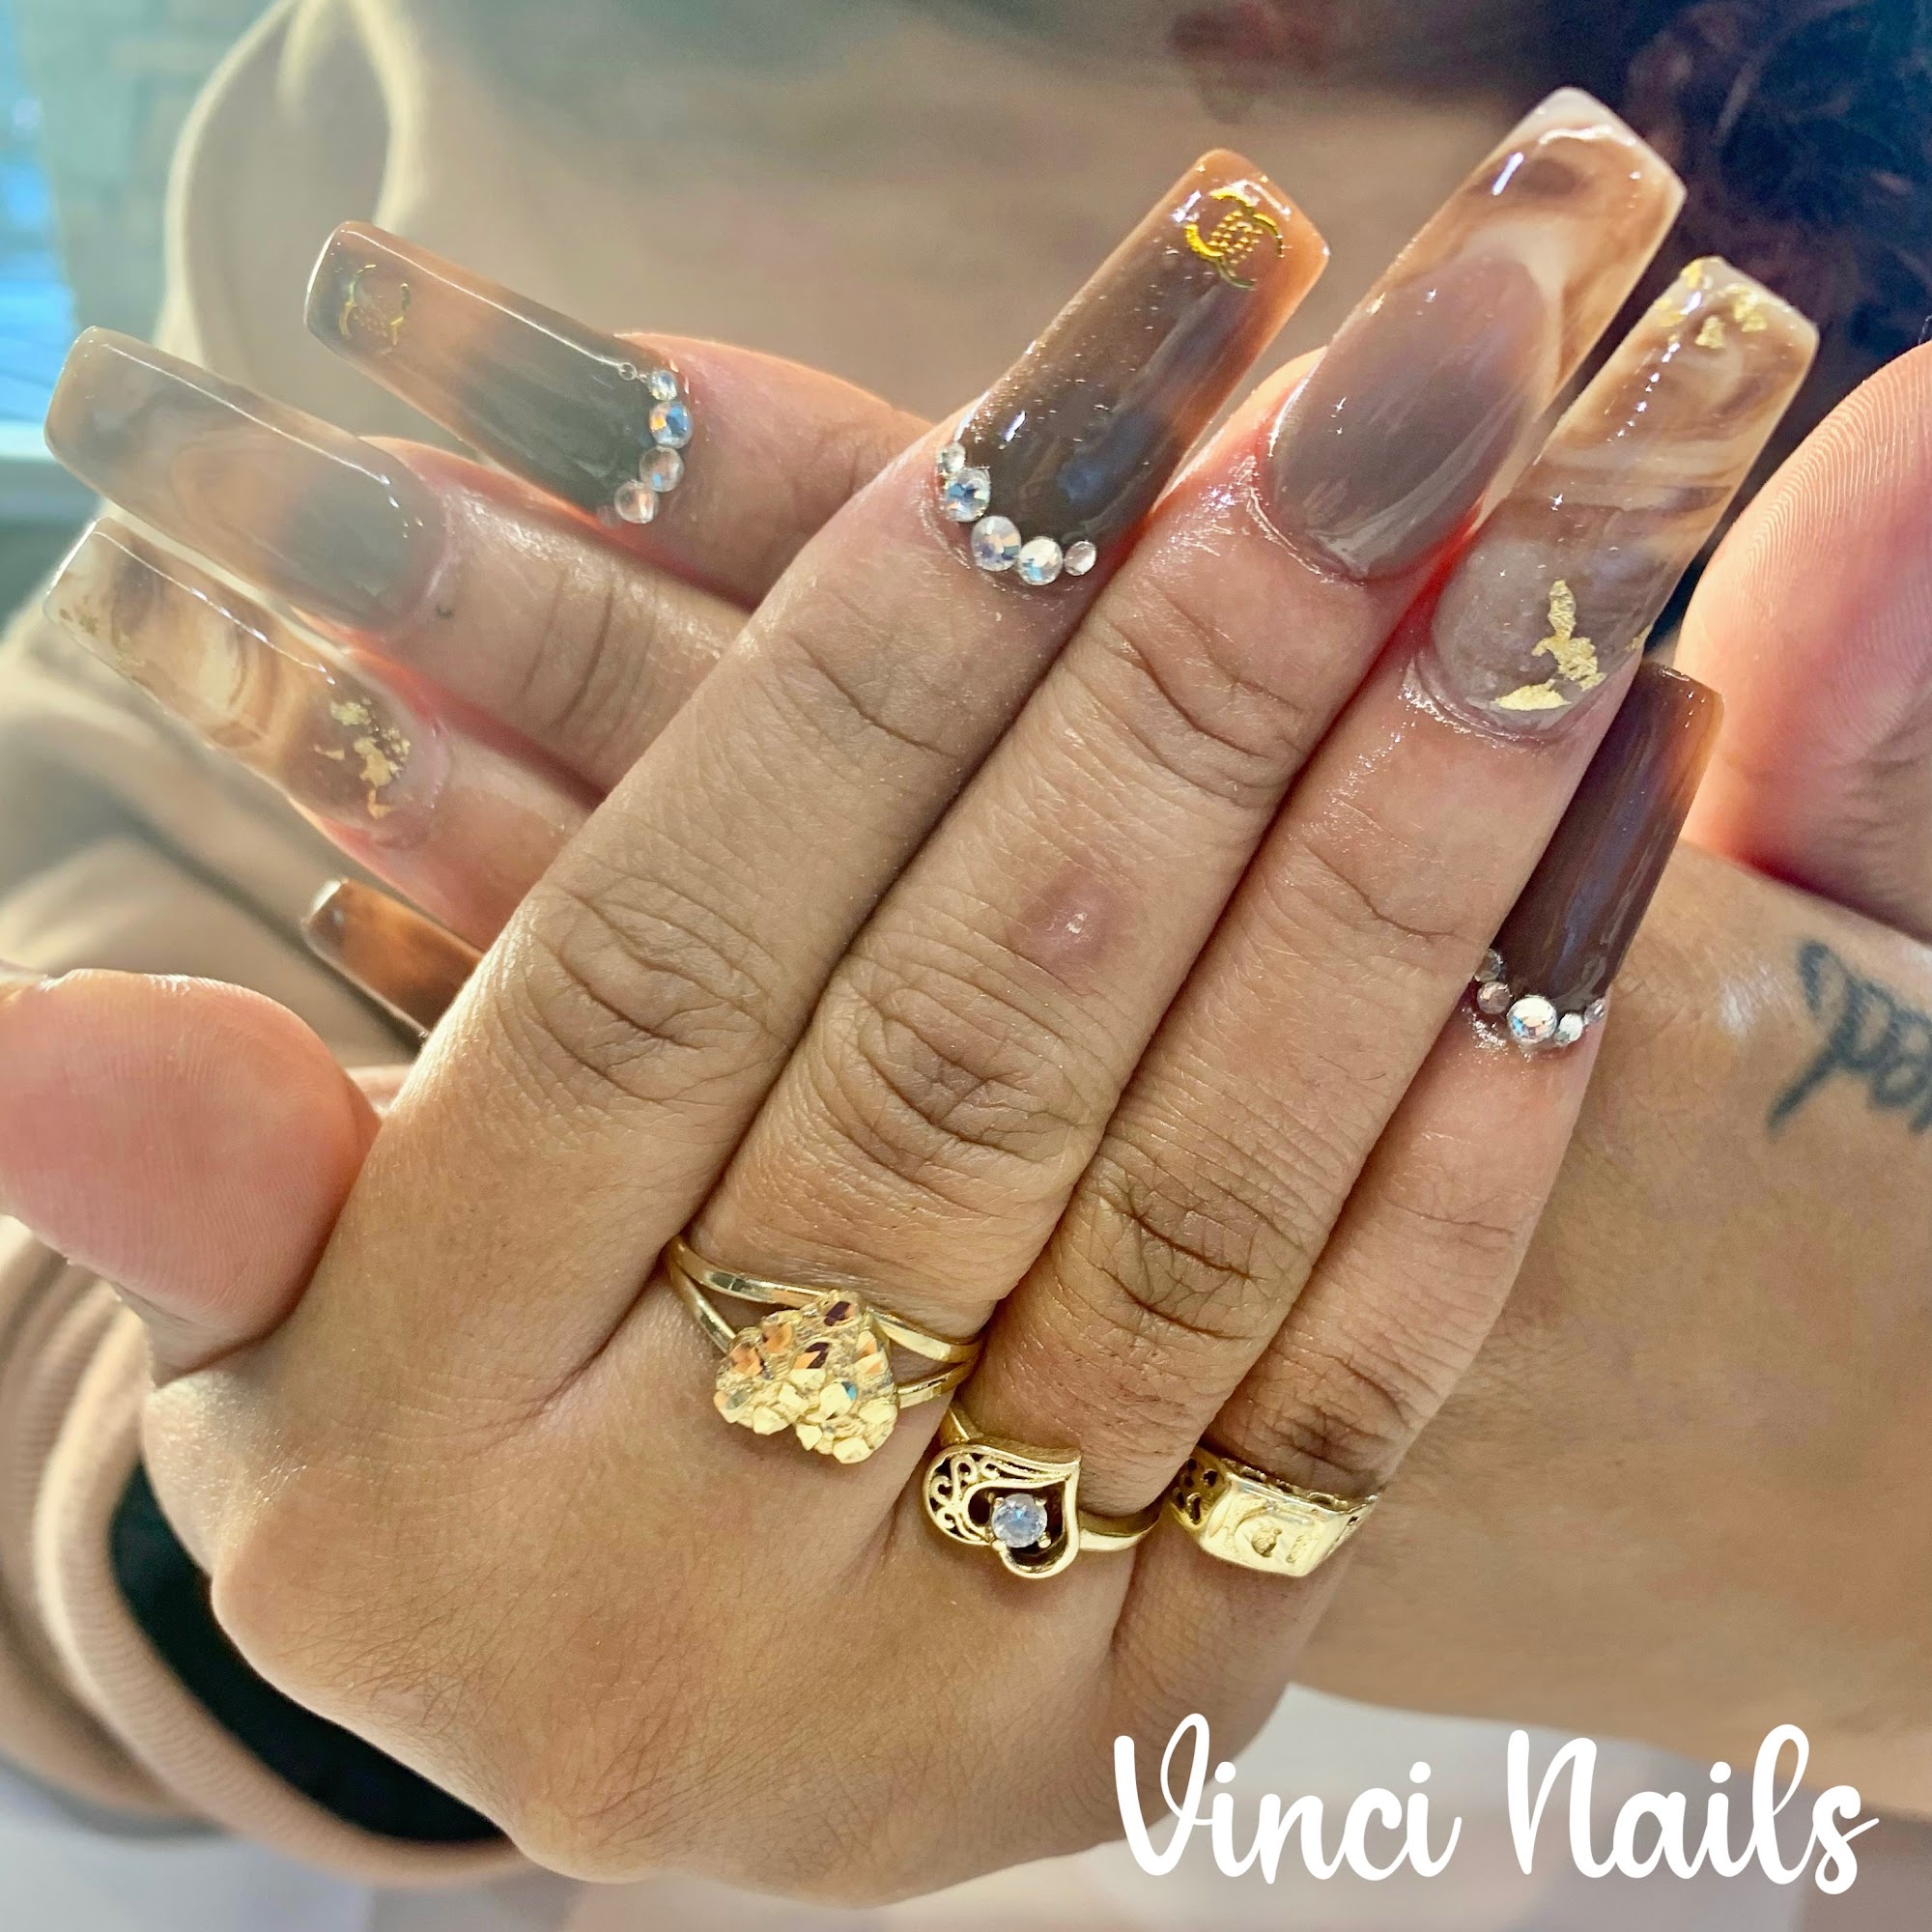 Vinci nails Inc